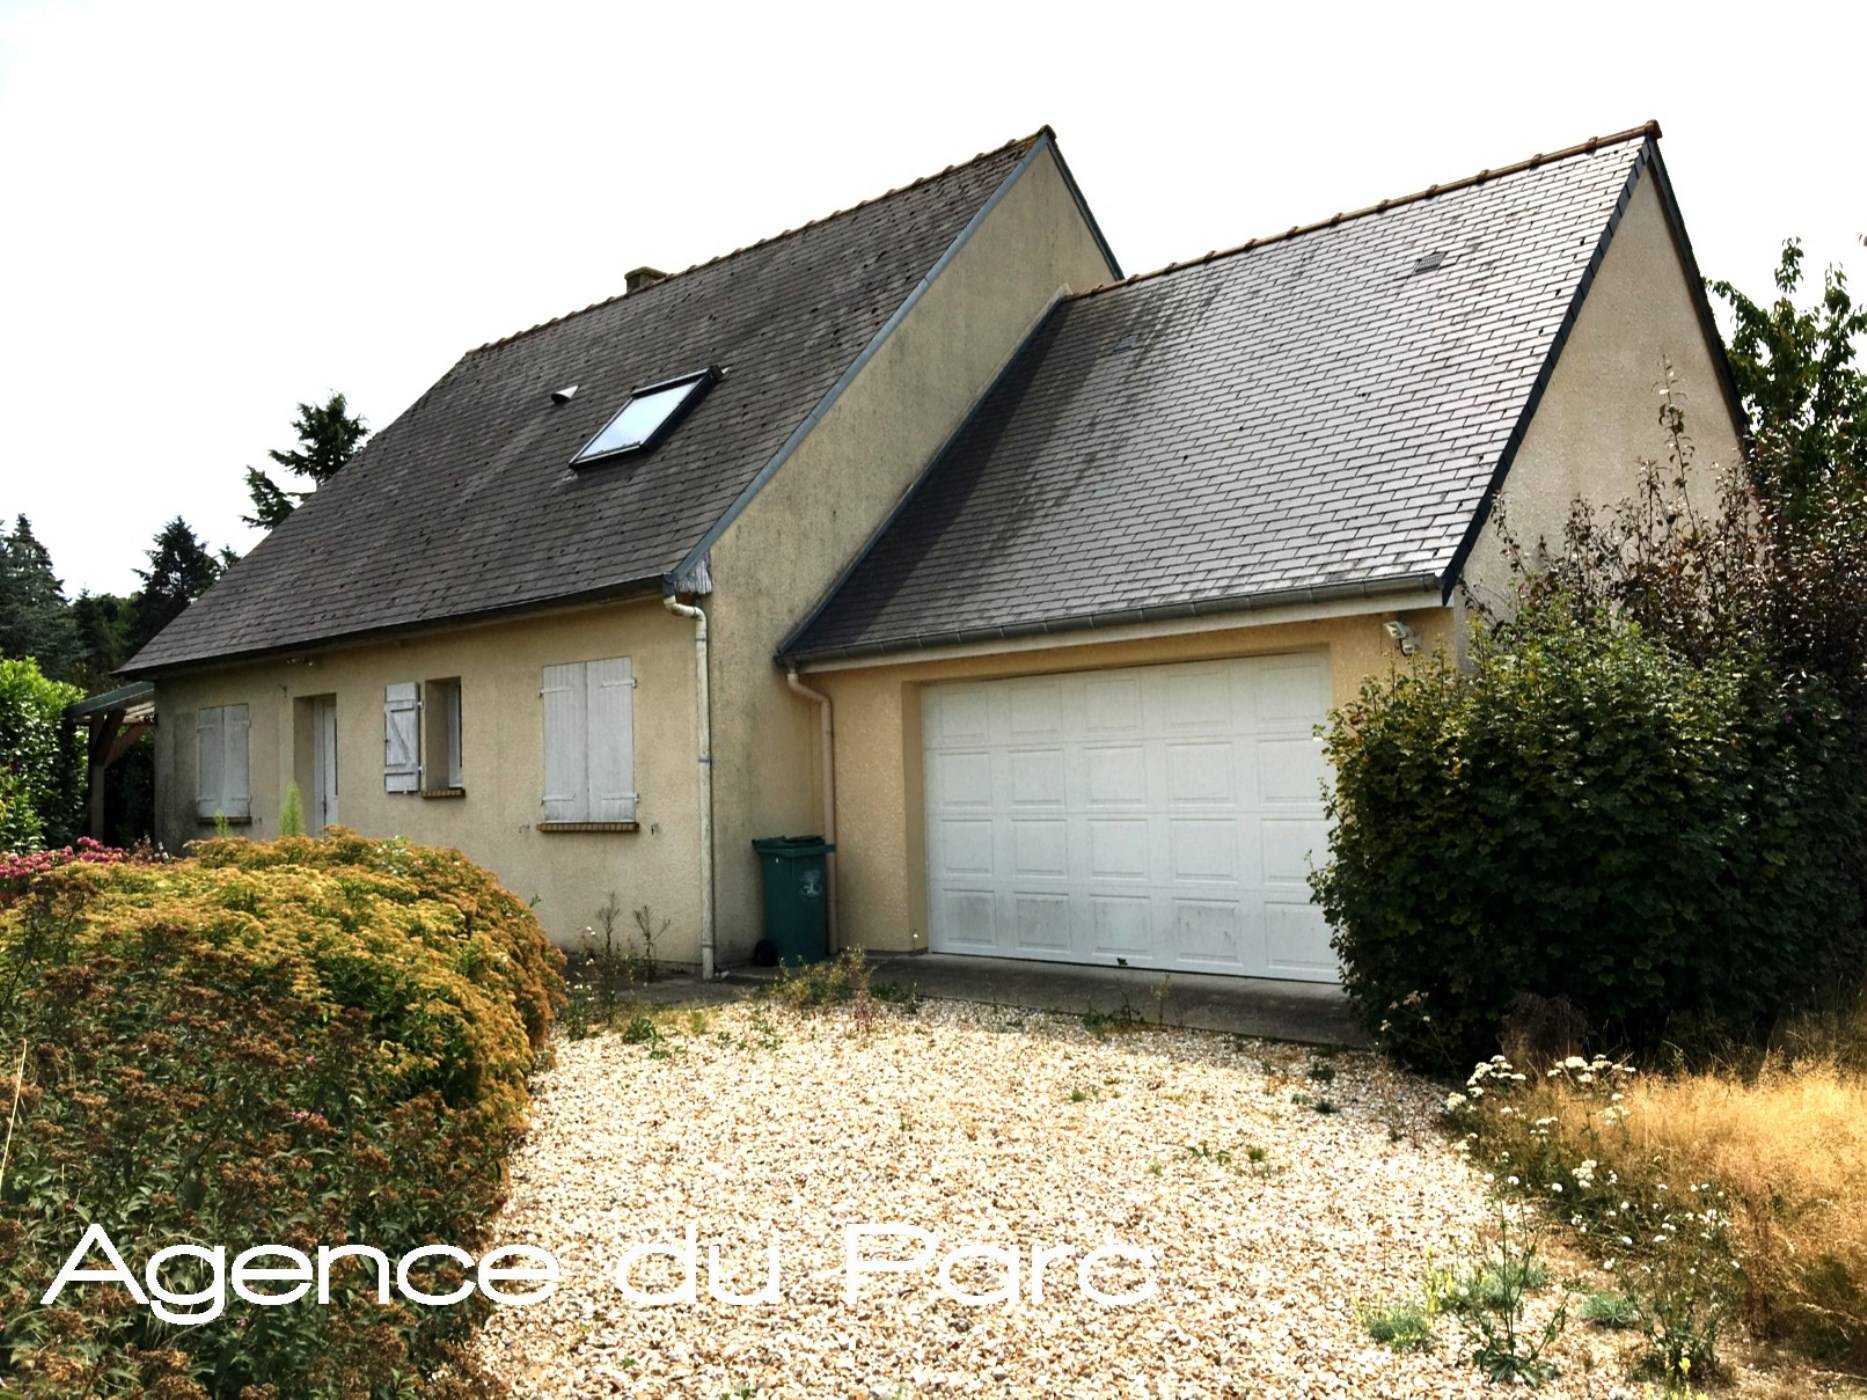 Vente d'une maison individuelle en bon état, à La Mailleraye sur Seine, en vallée de Seine